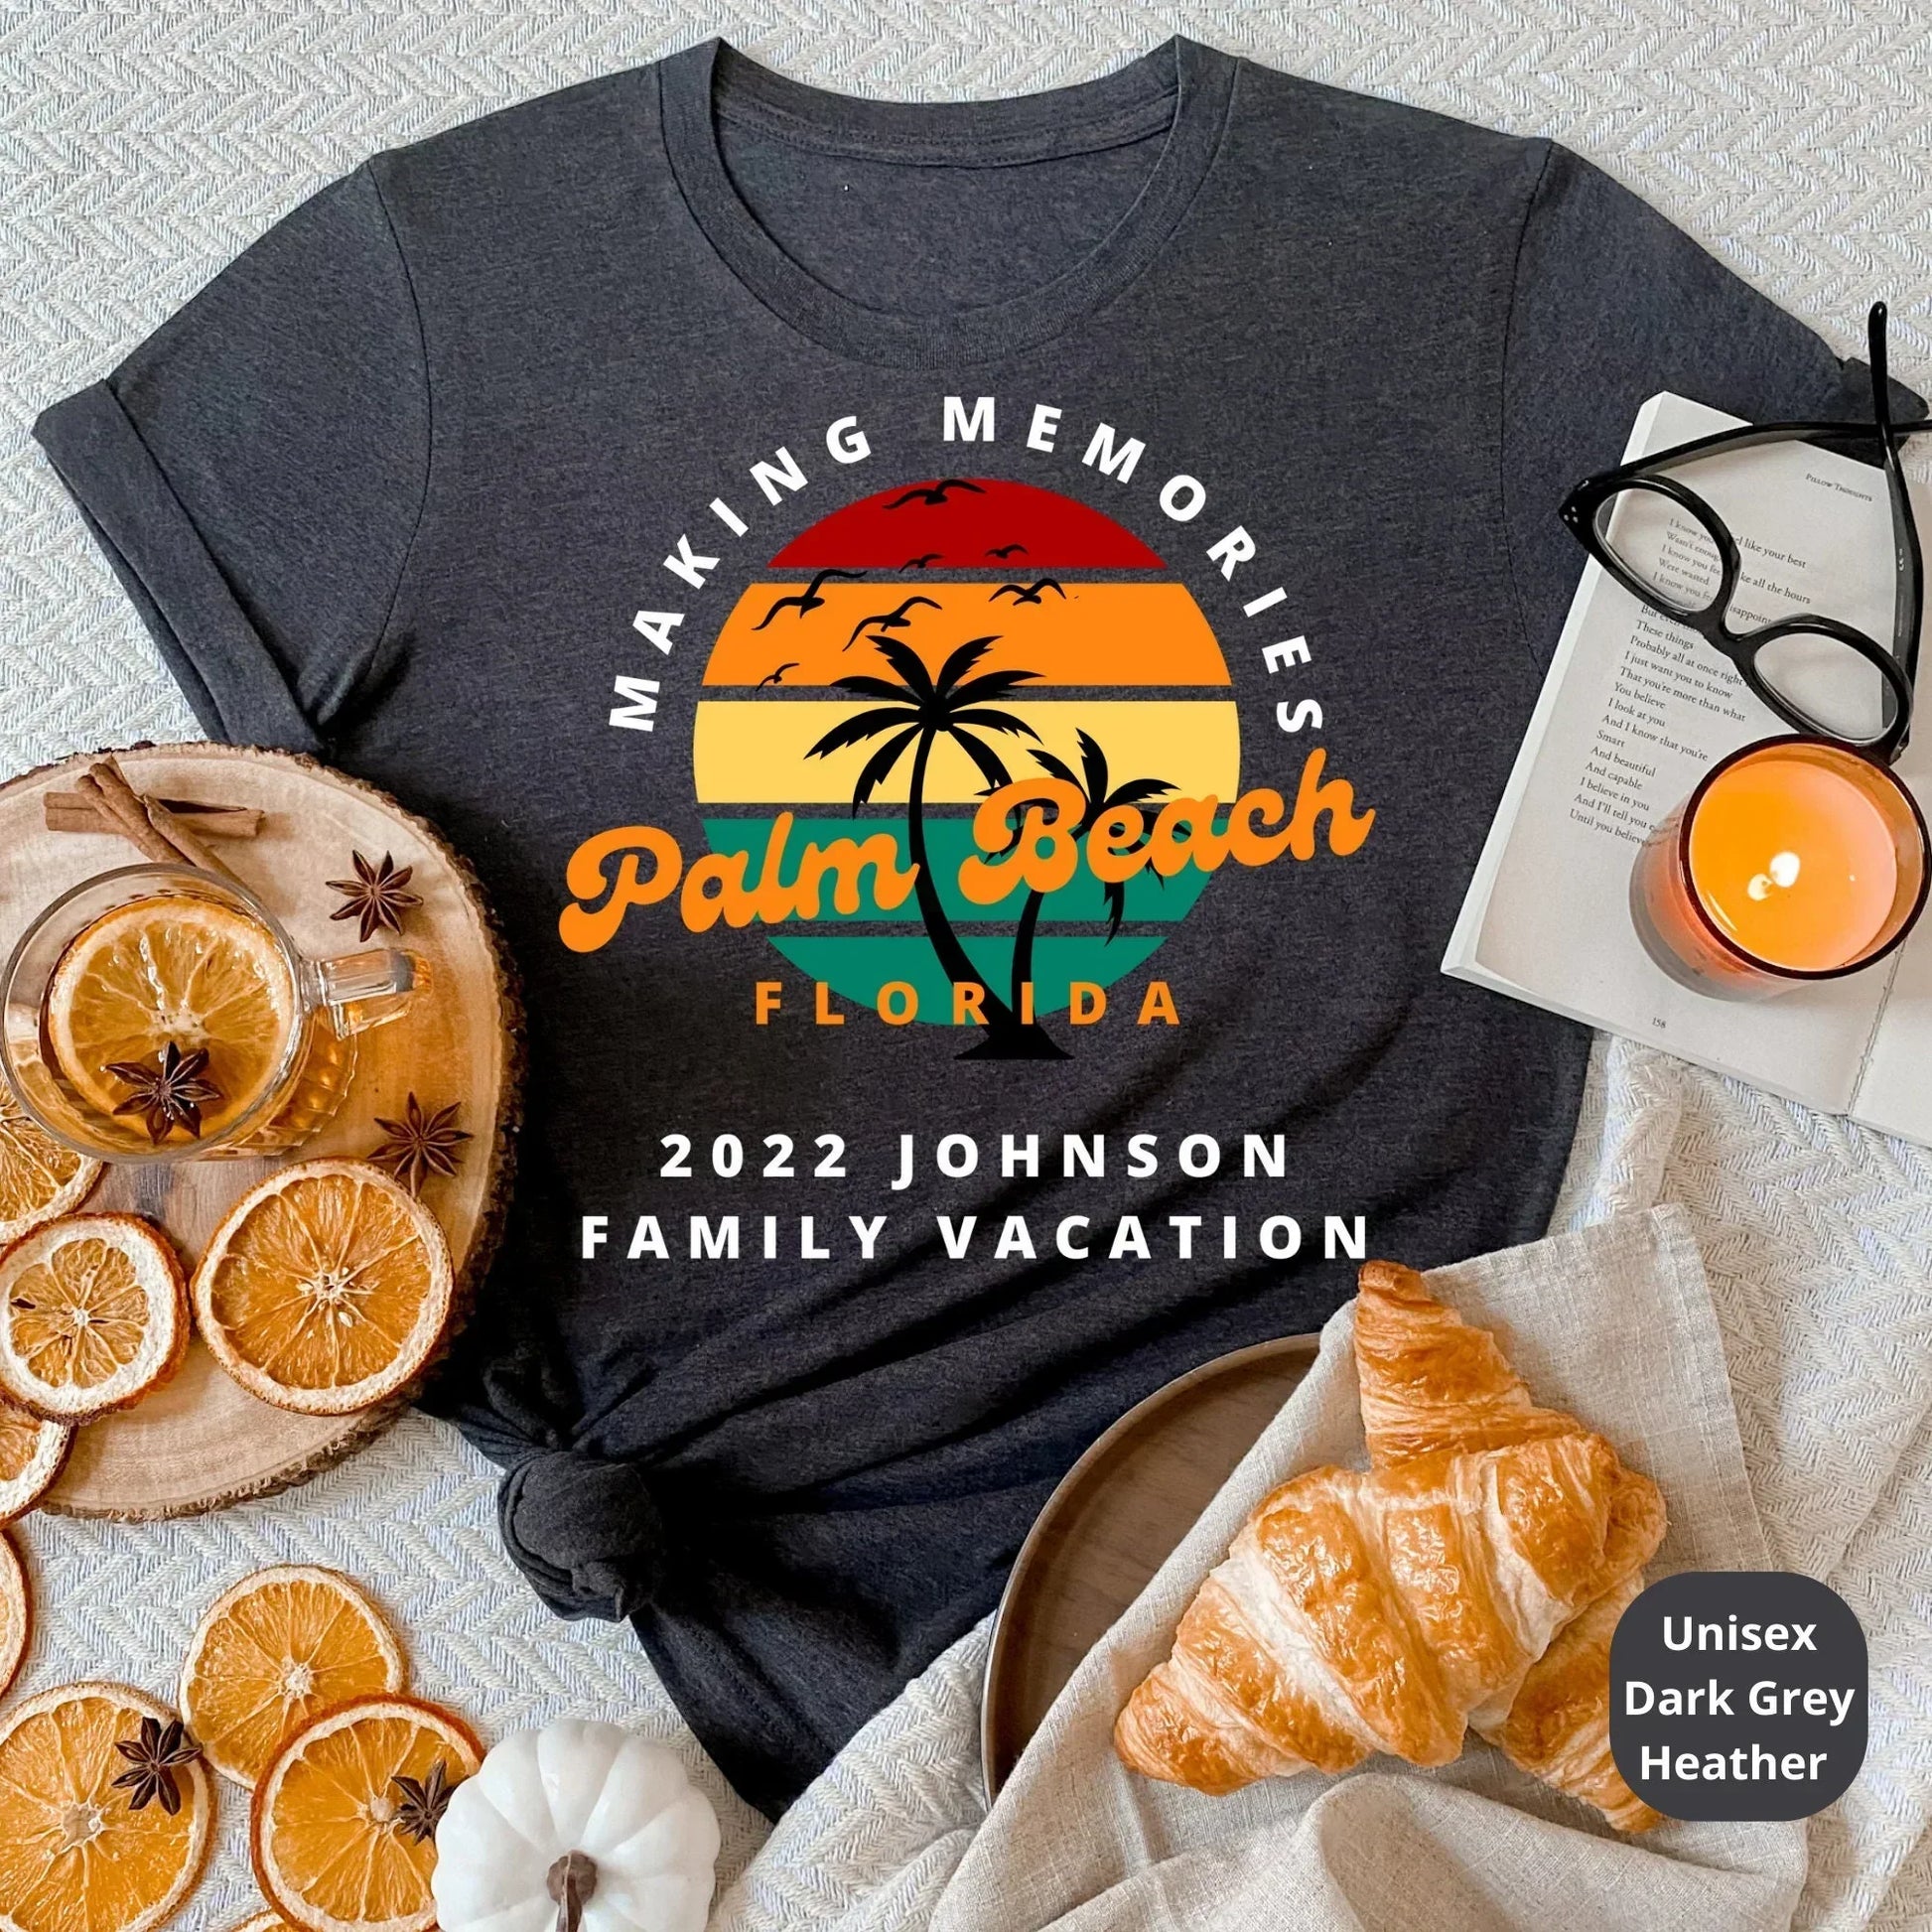 Custom Family Vacation Shirts